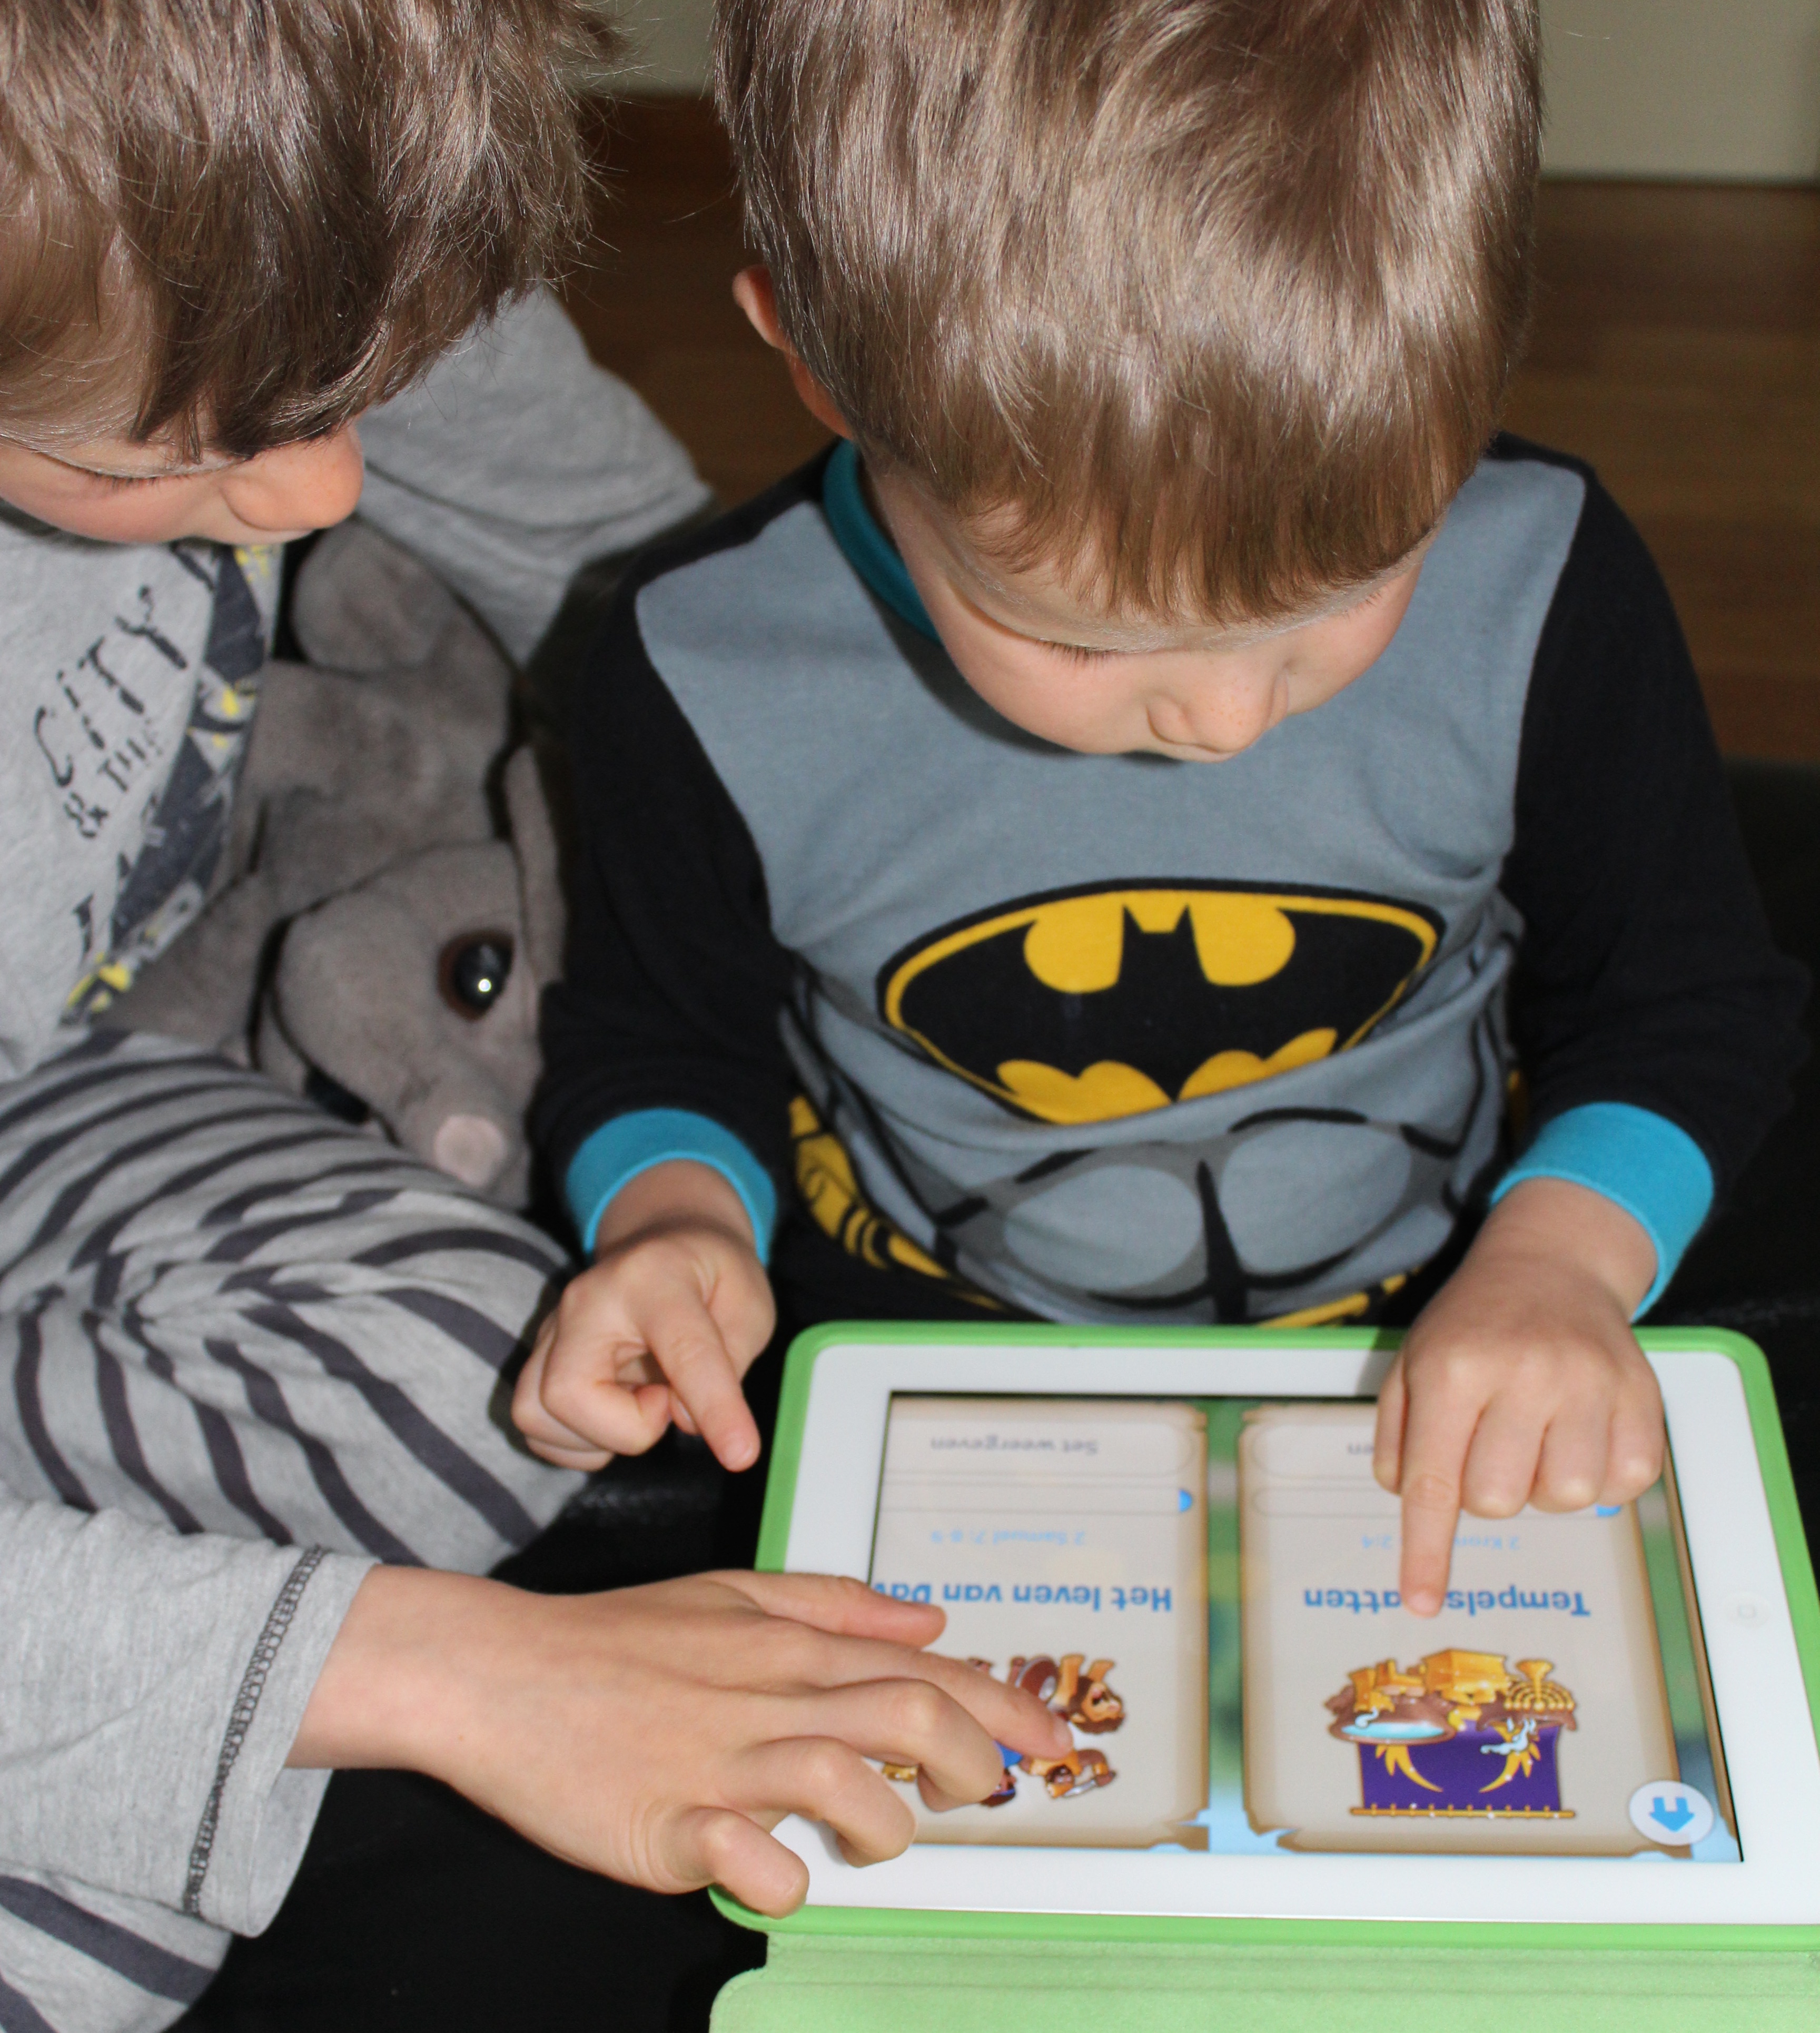 Animaties en verzamelitems motiveren de kinderen om verder te lezen. © LW